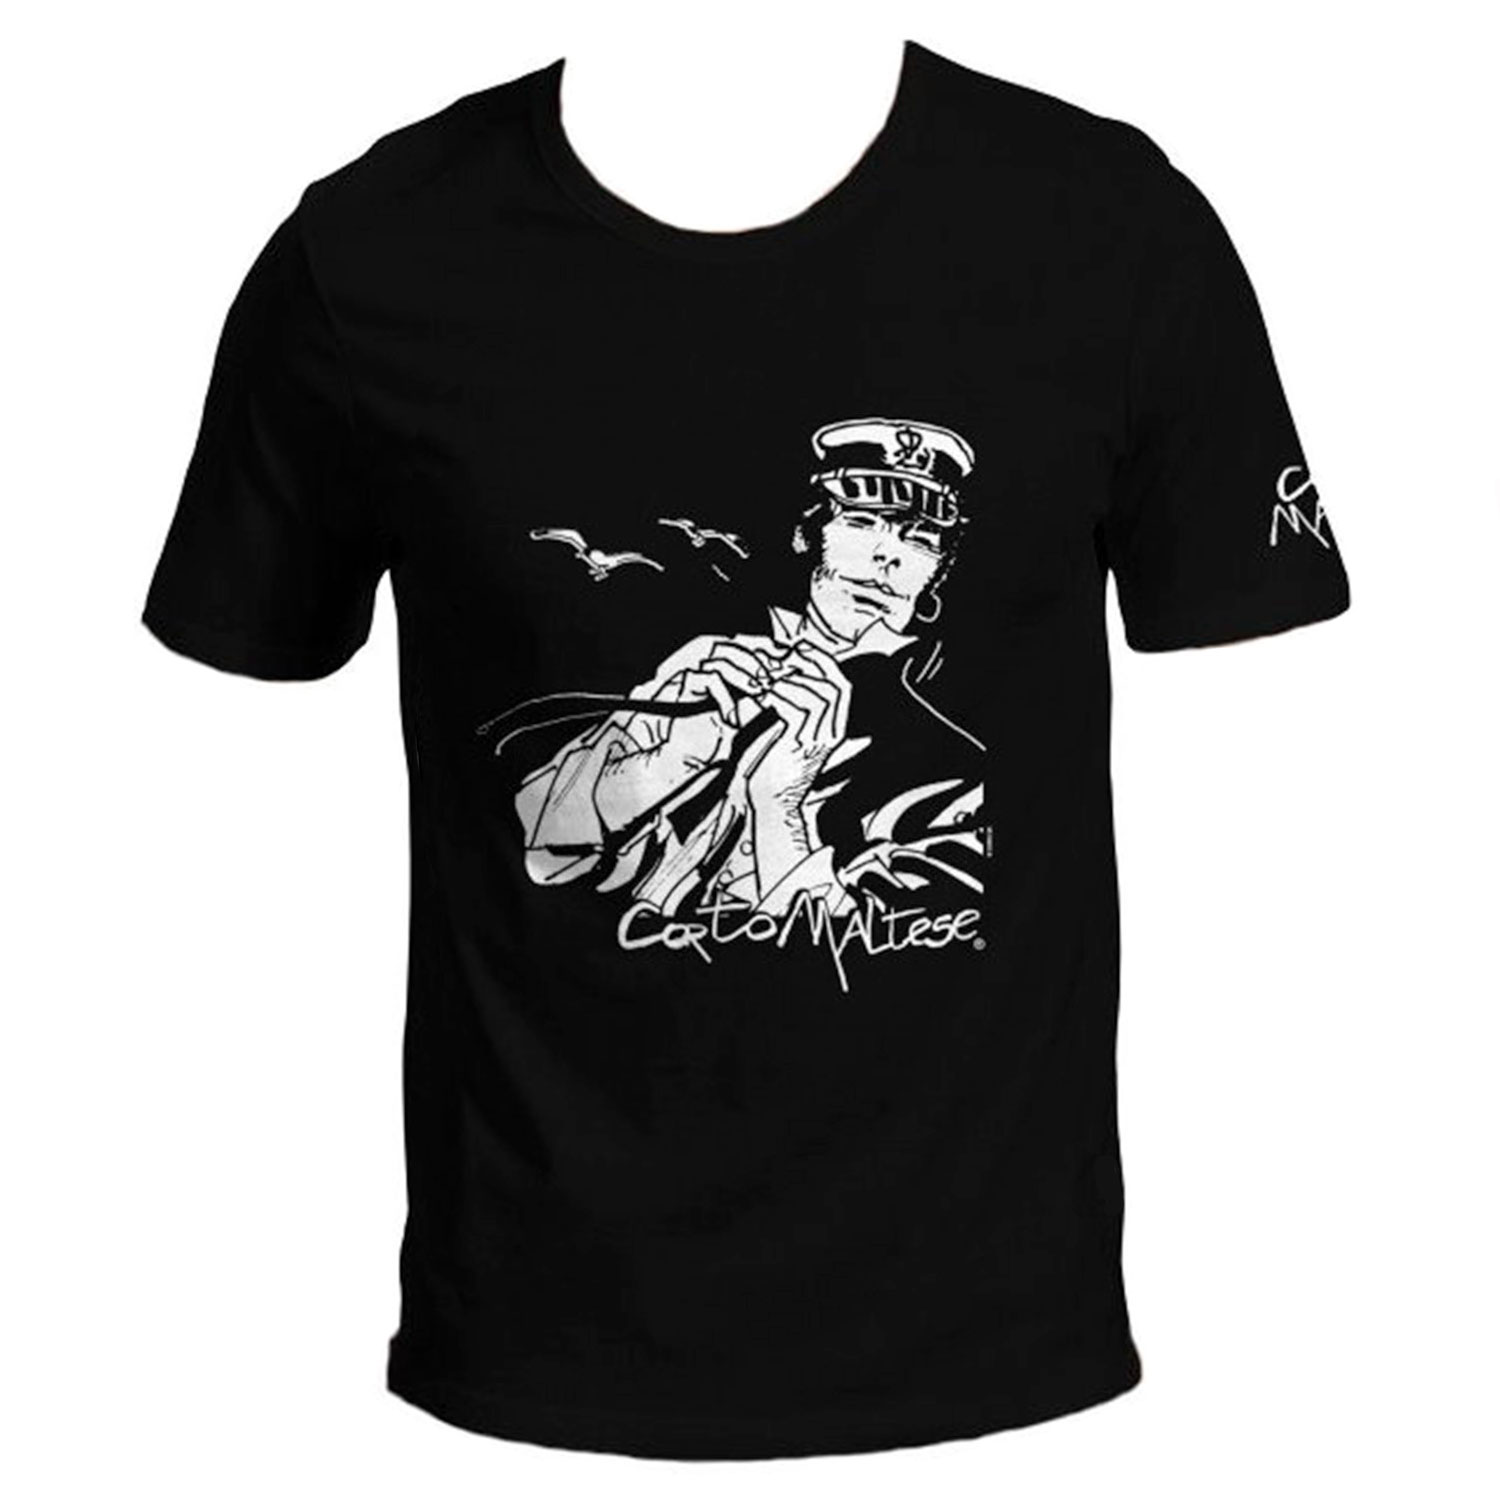 T-shirt Hugo Pratt :  Corto Maltese dans le vent - Noir - Taille S